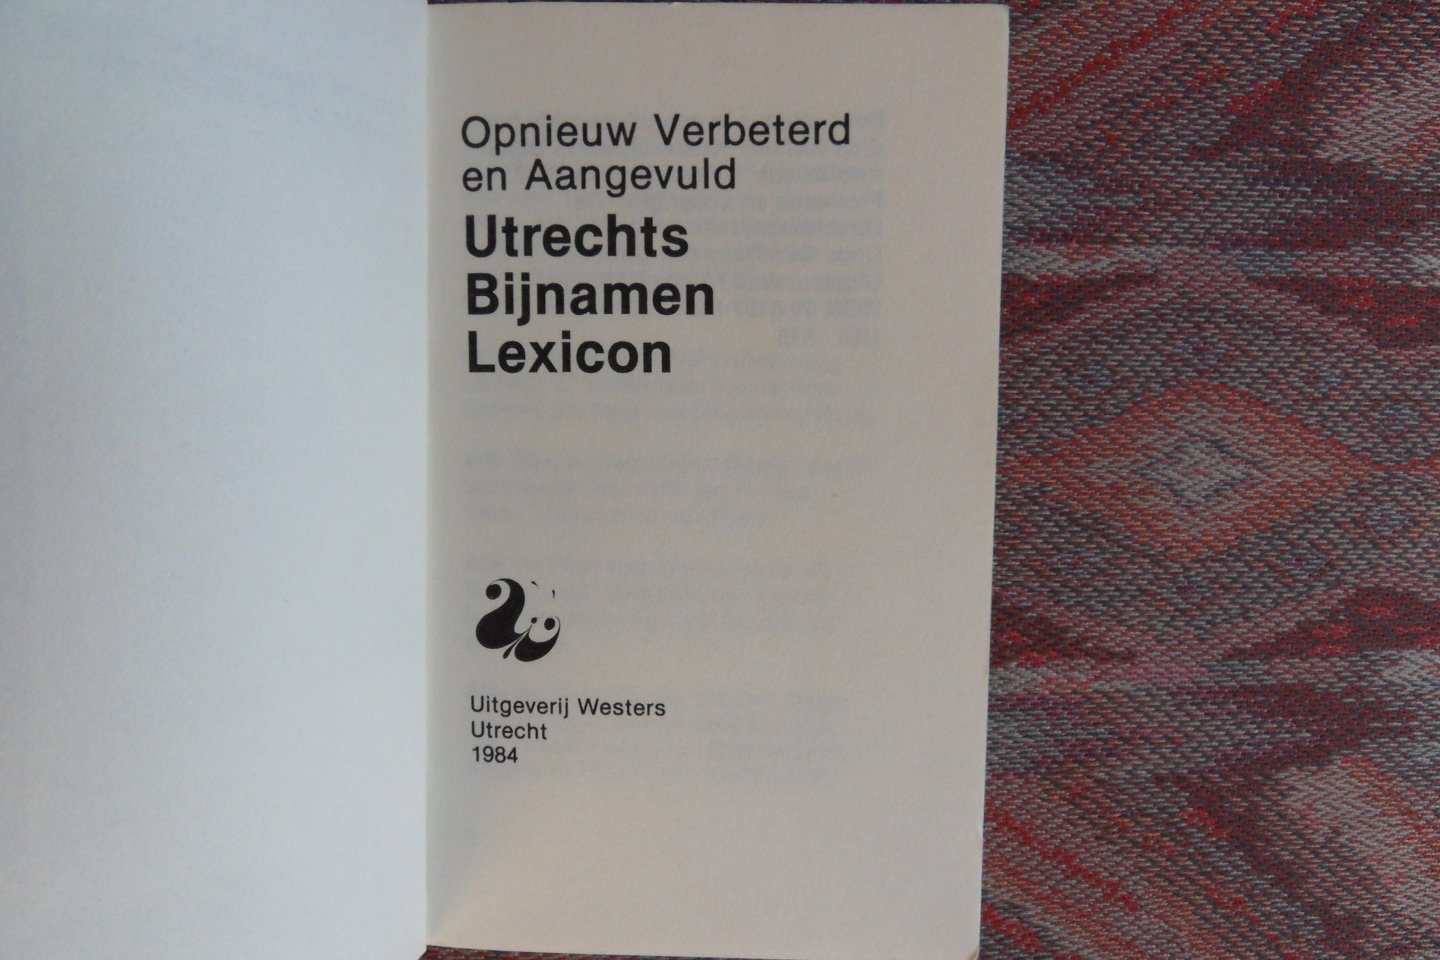 "De Utrechtsche". ( productie en copyright ). - Opnieuw verbeterd en aangevuld Utrechts Bijnamen Lexicon.